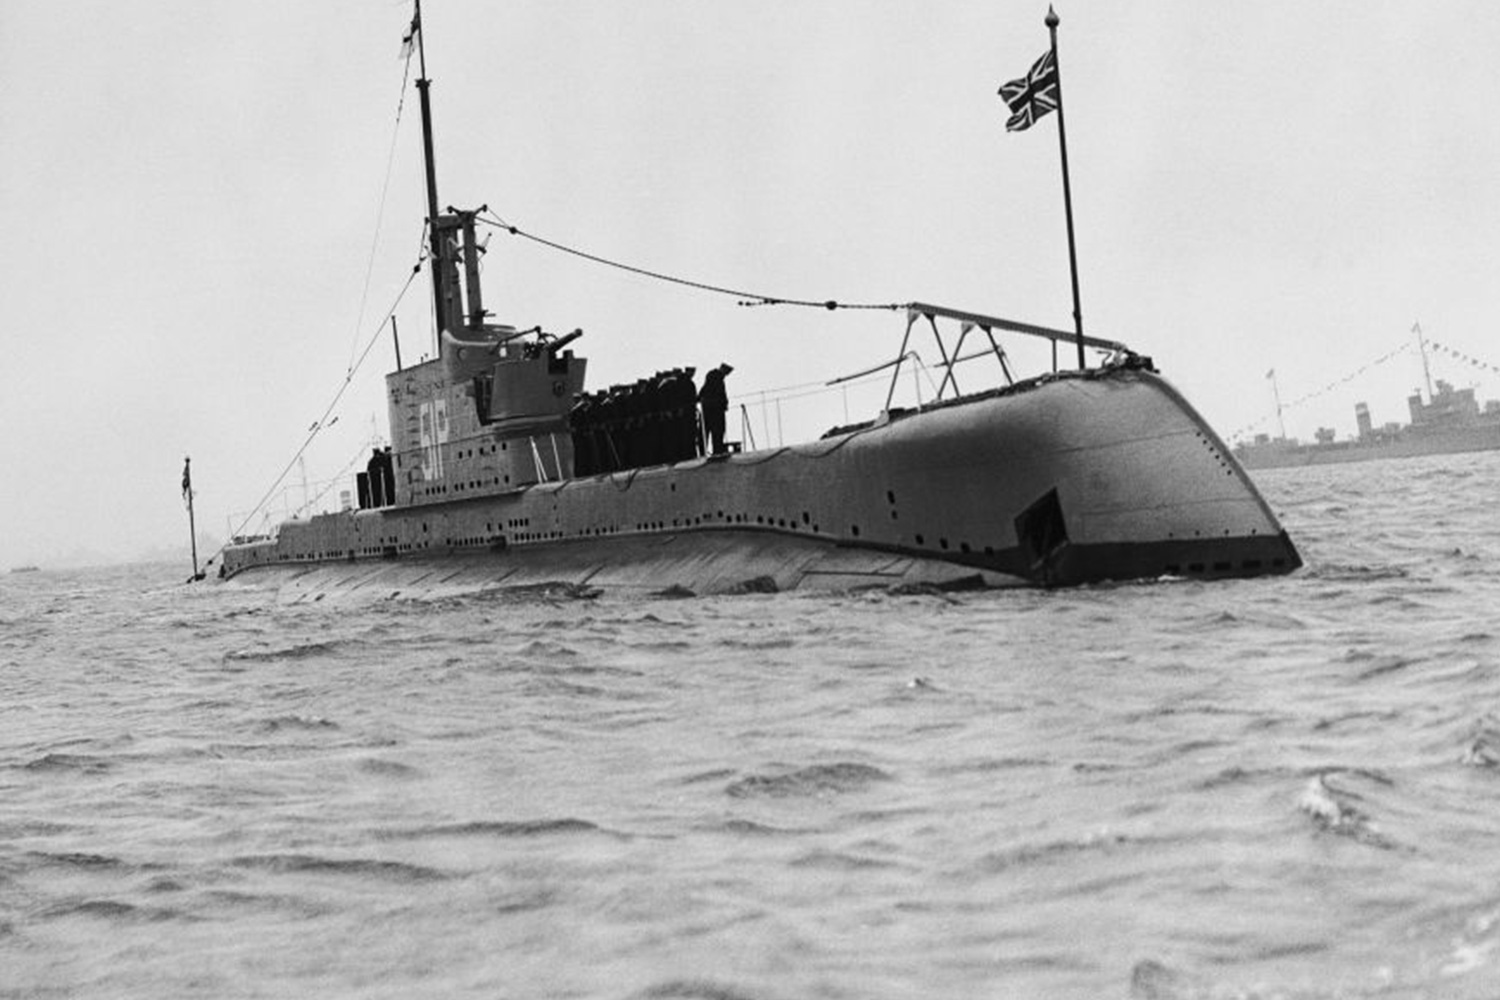 Hallan un submarino desaparecido en la II Guerra Mundial con 71 cadáveres en su interior